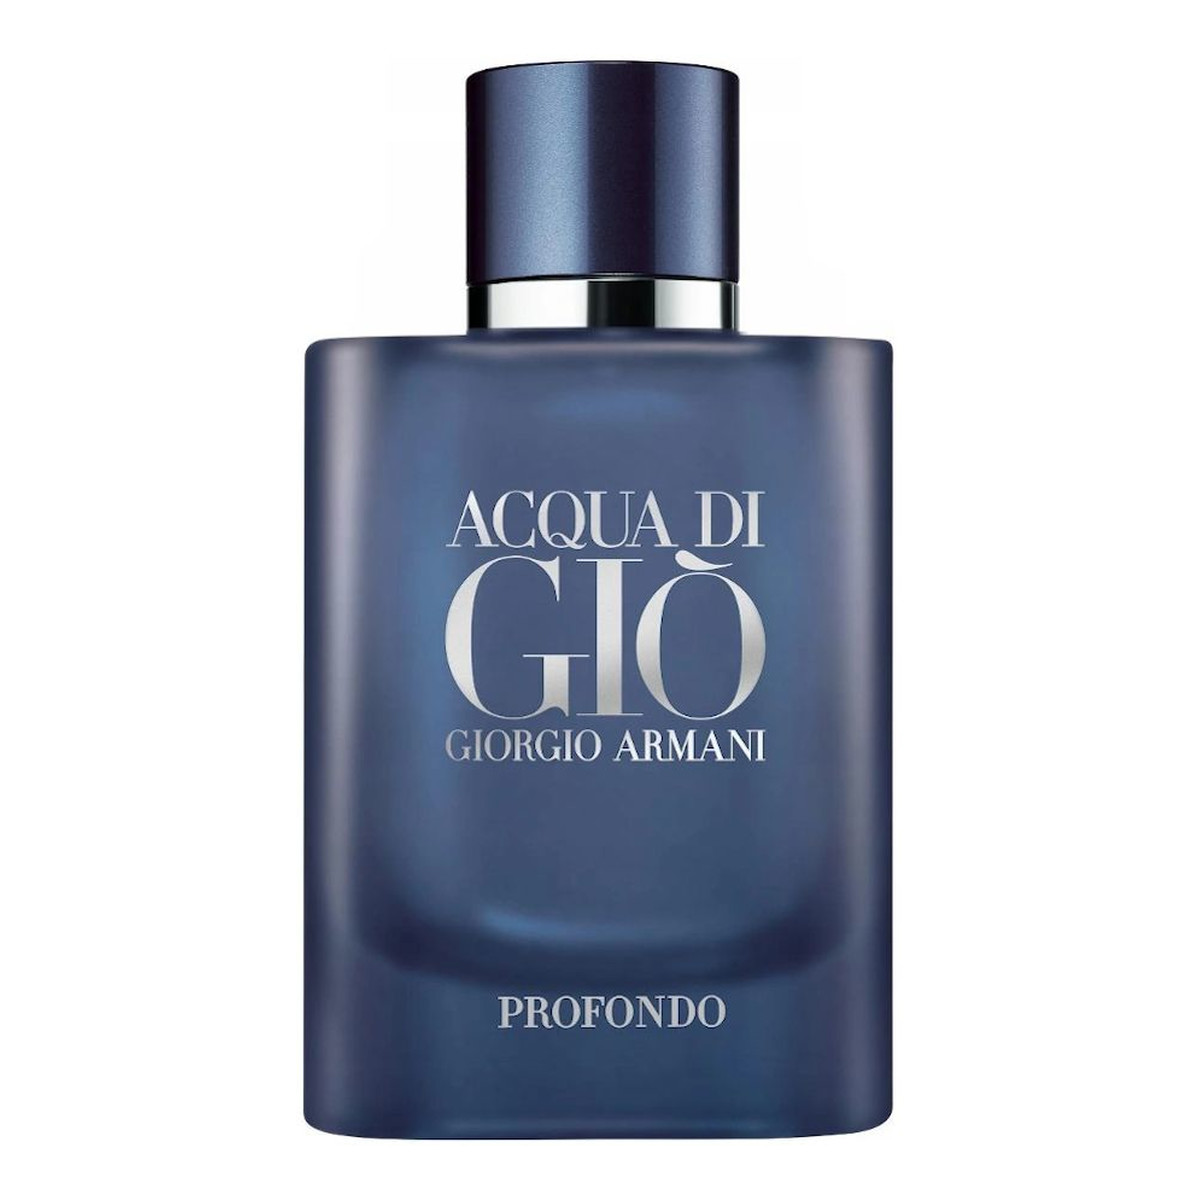 Giorgio Armani Acqua di Gio Profondo Woda perfumowana spray tester 75ml